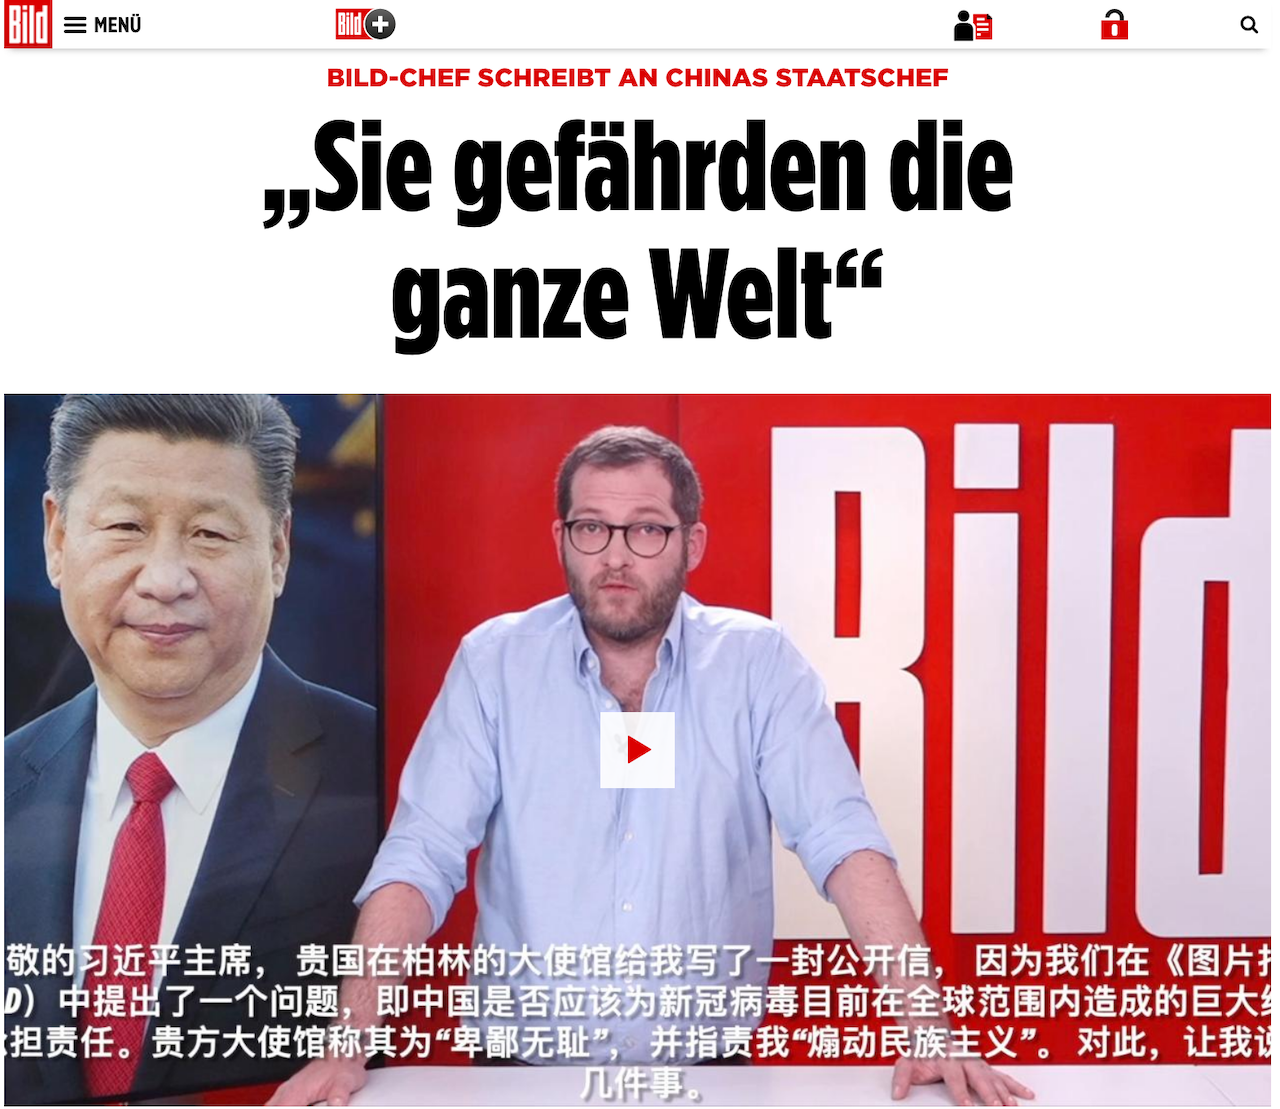 中國遭歐洲銷量冠軍報紙德國《畫報》痛擊